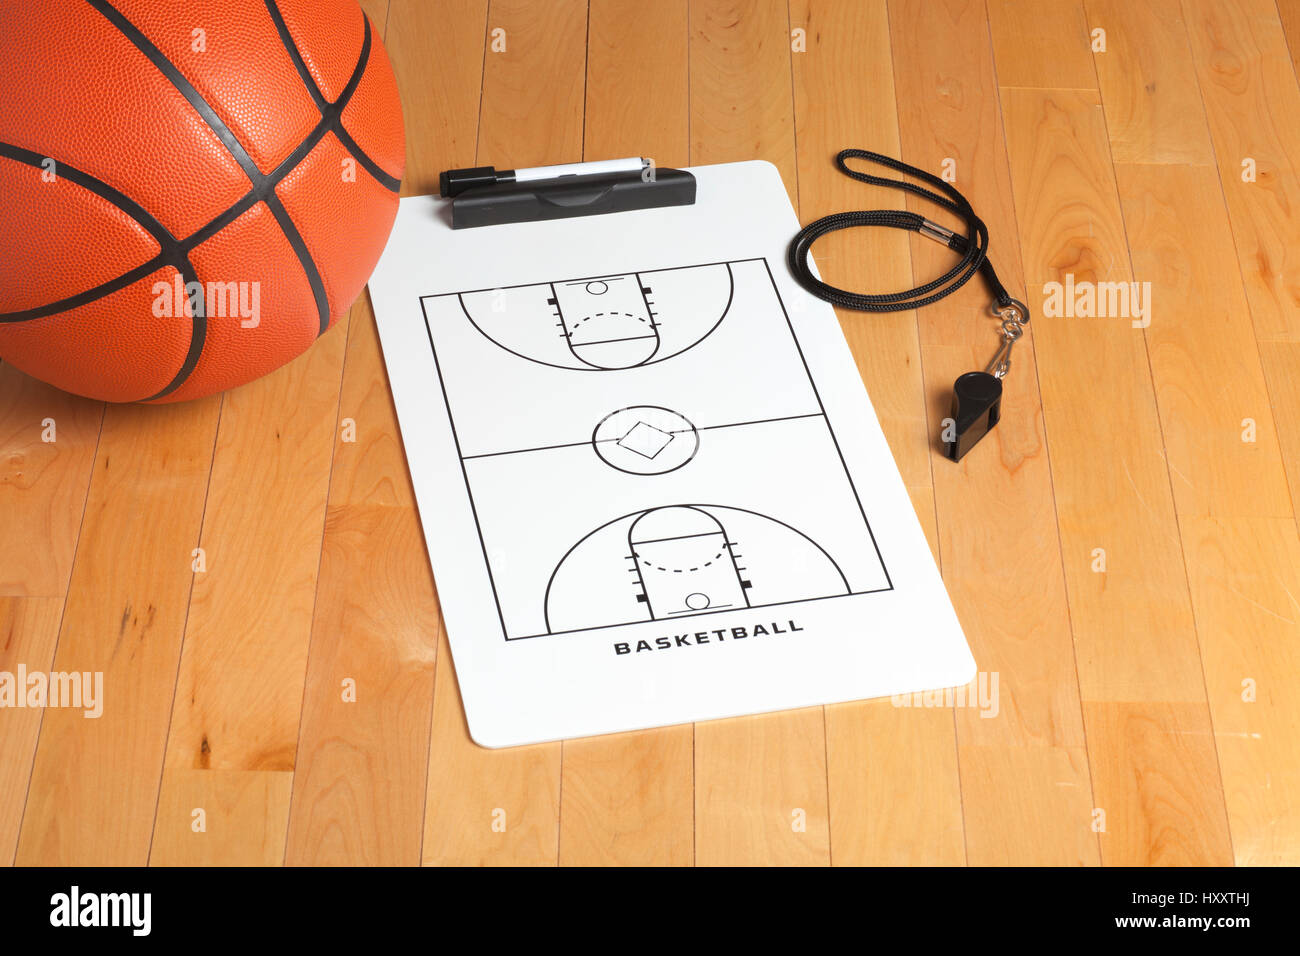 Ein Basketball mit Zwischenablage und Pfiff auf einem hölzernen Gymnasium Boden des Trainers Stockfoto